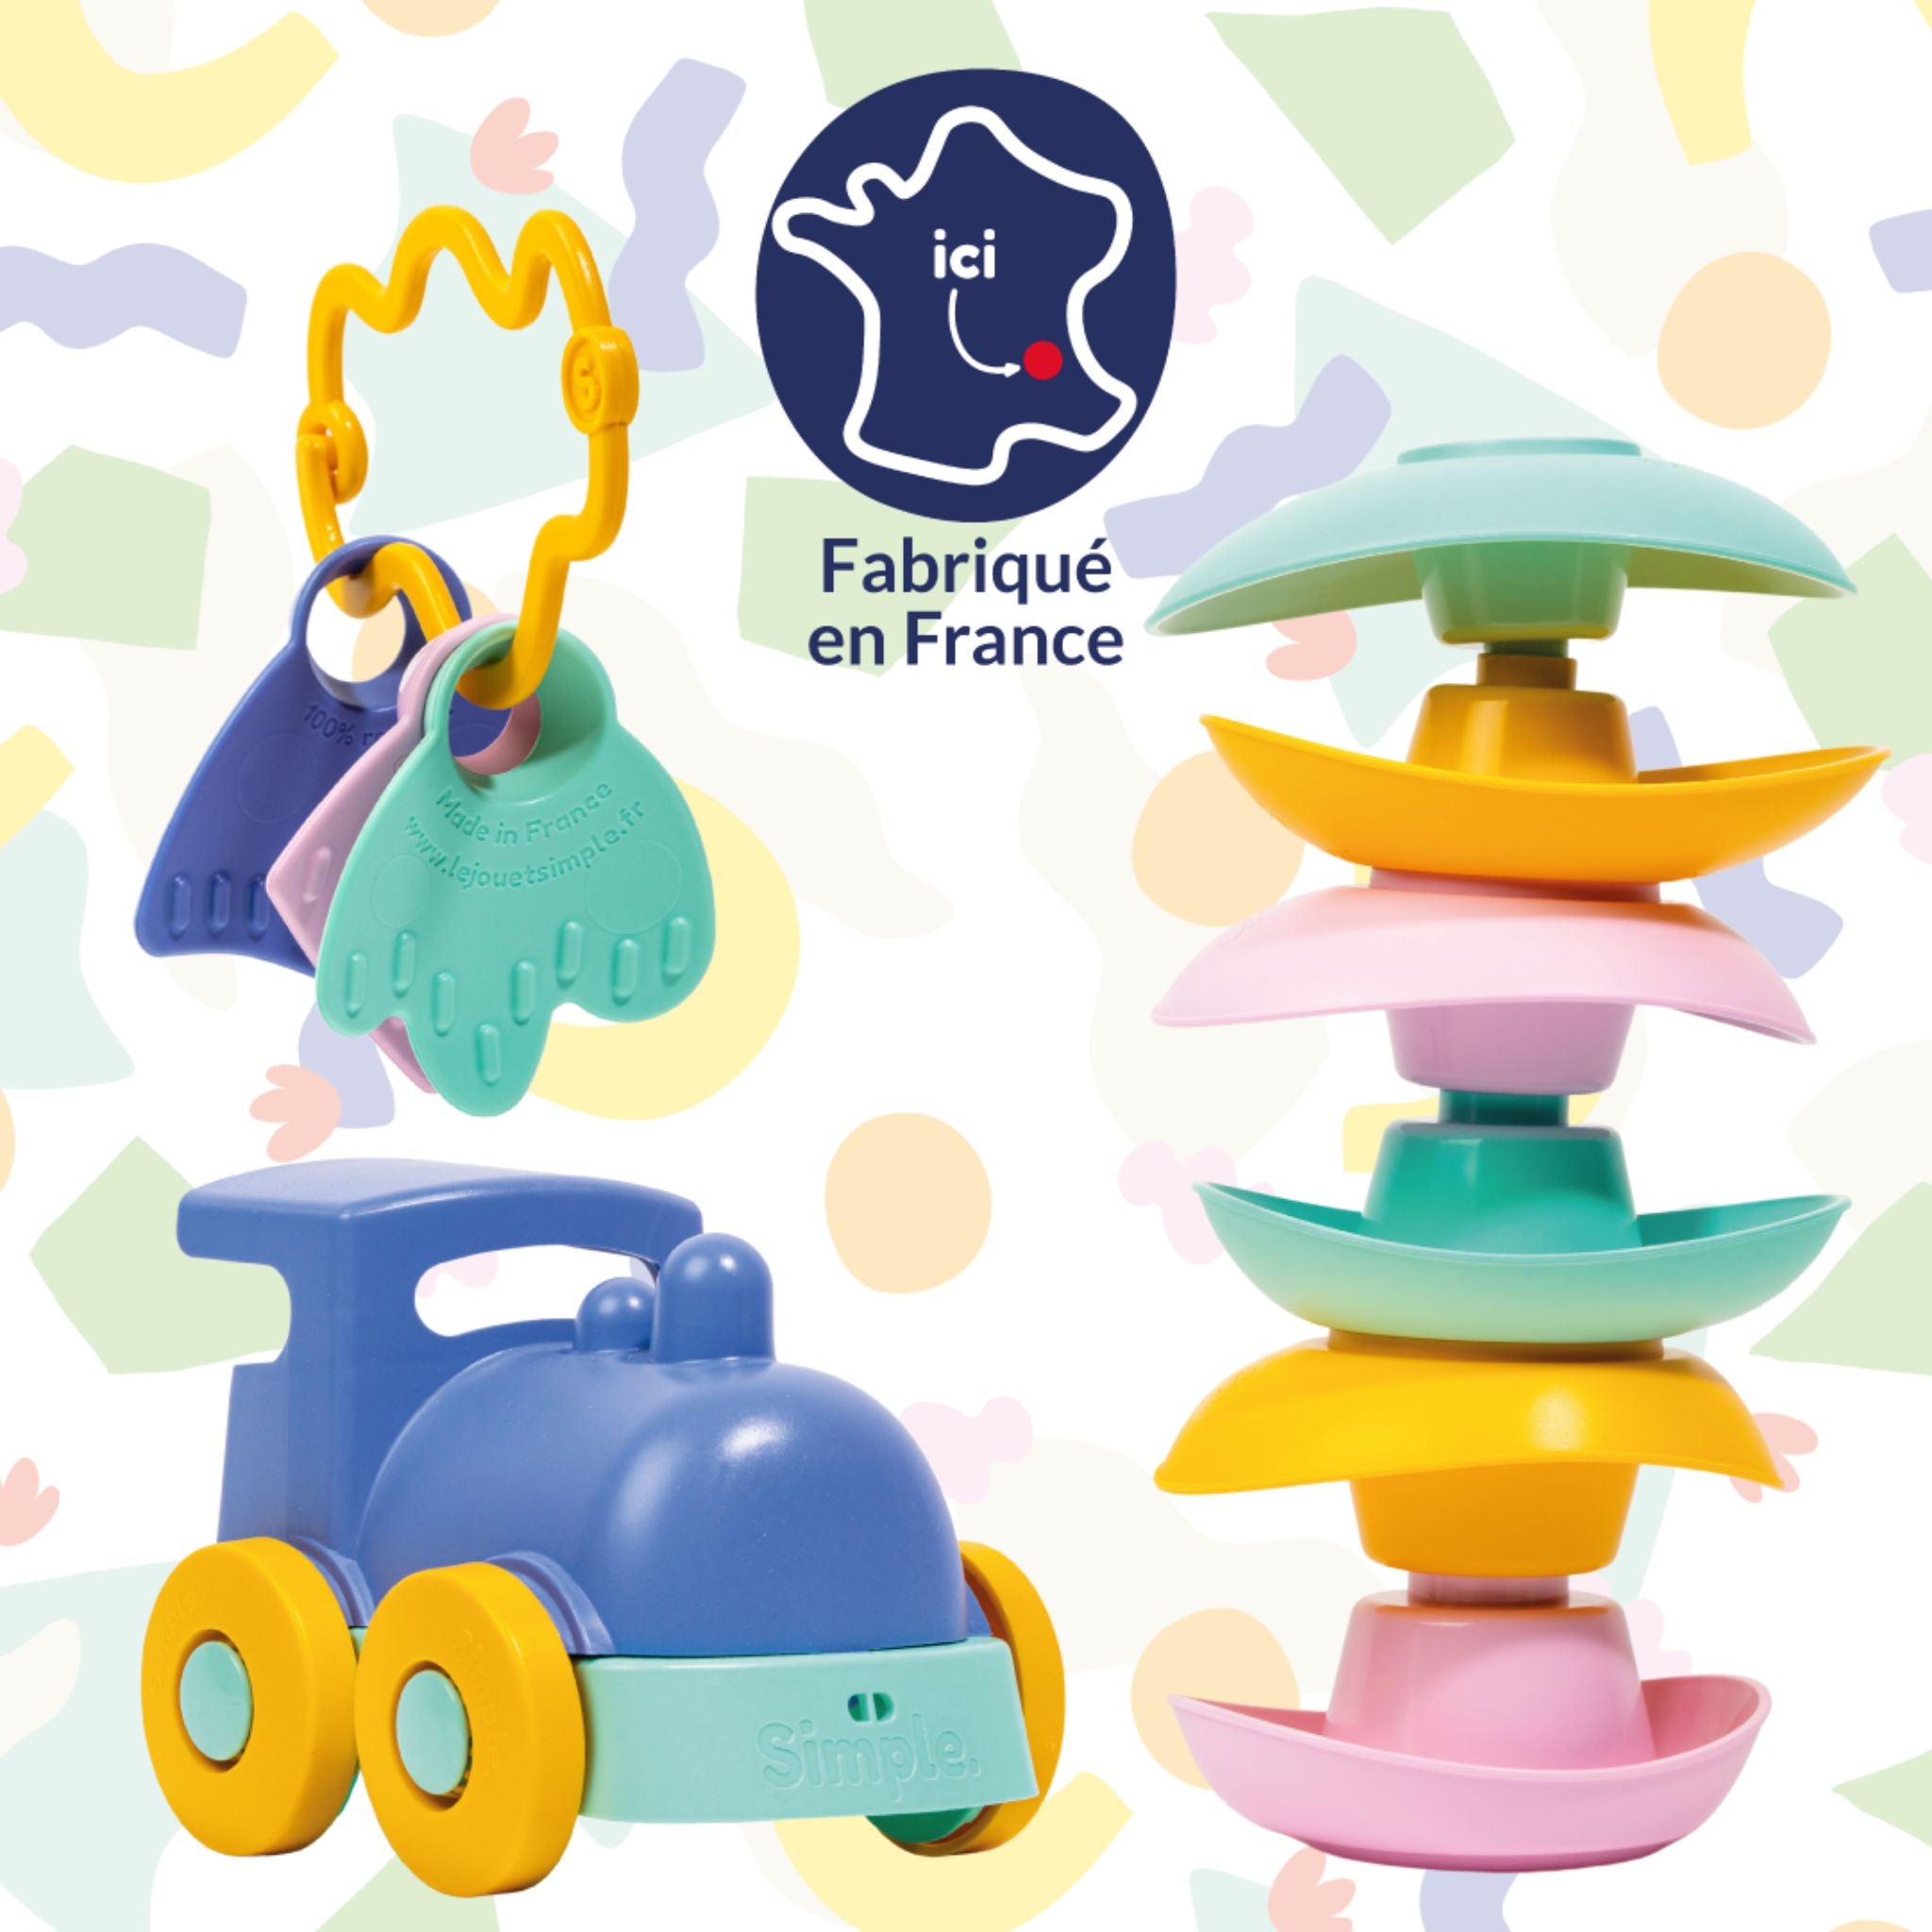 Coffret jouets d'éveil made in France en plastique recyclé - Le